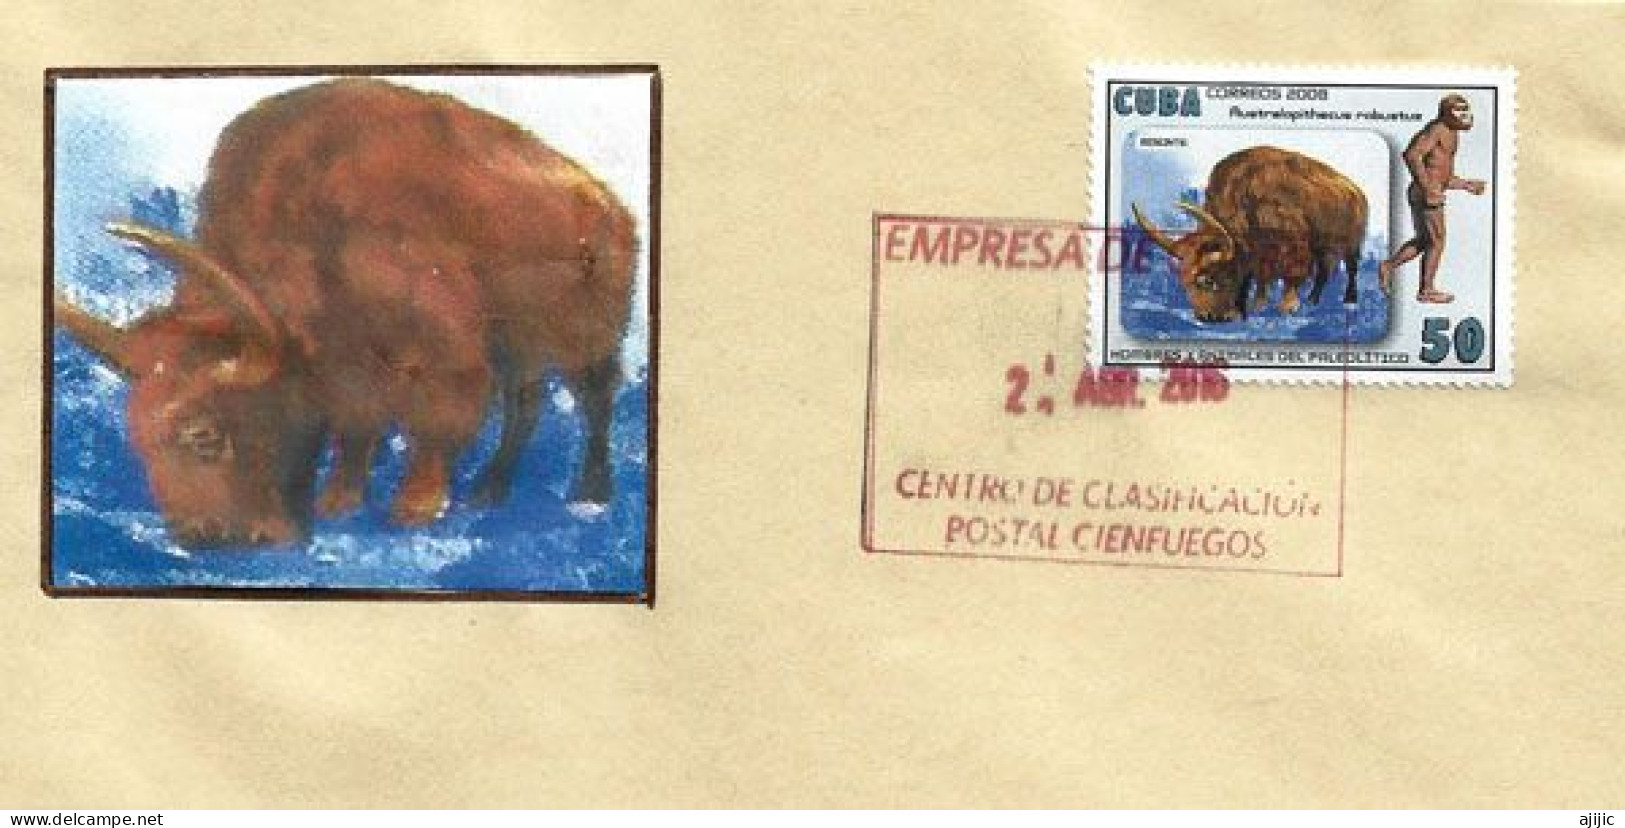 Le Bison & L'Australopithèque,sur Lettre De Cienfuegos (Cuba) - Vaches